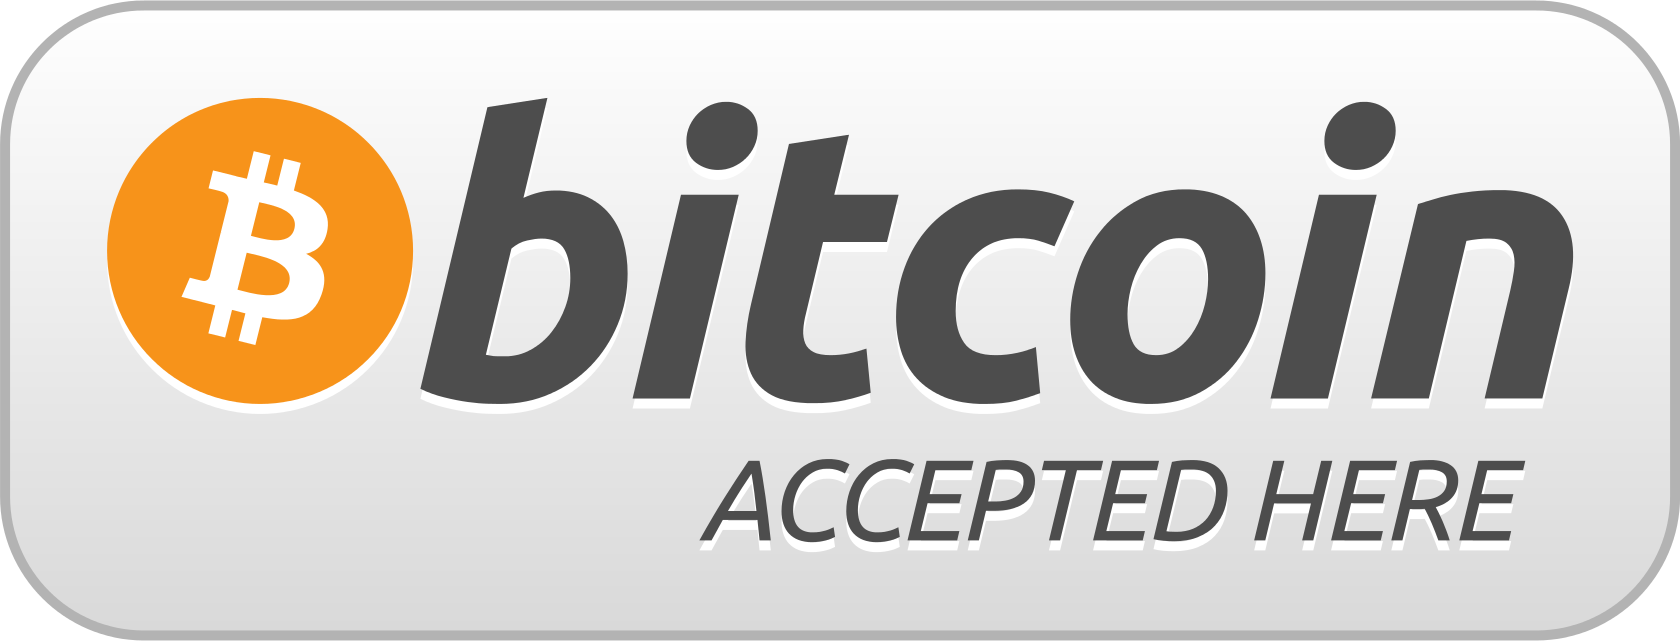 Se aceptan Bitcoin y Ethereum